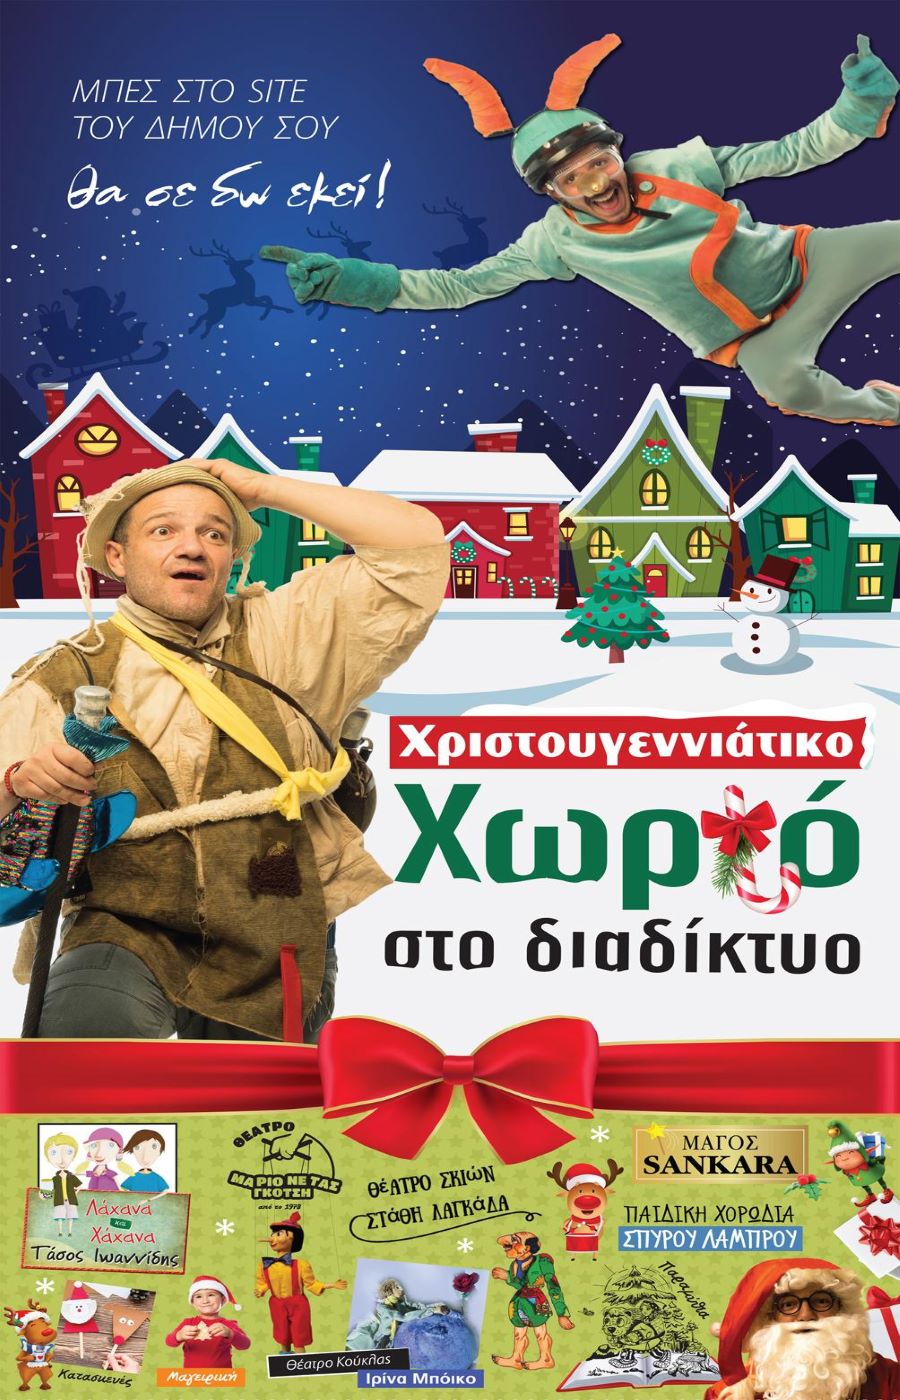 Χριστουγεννιάτικο Διαδικτυακό Χωριό στην επίσημη σελίδα του Δήμου Αν. Σάμου